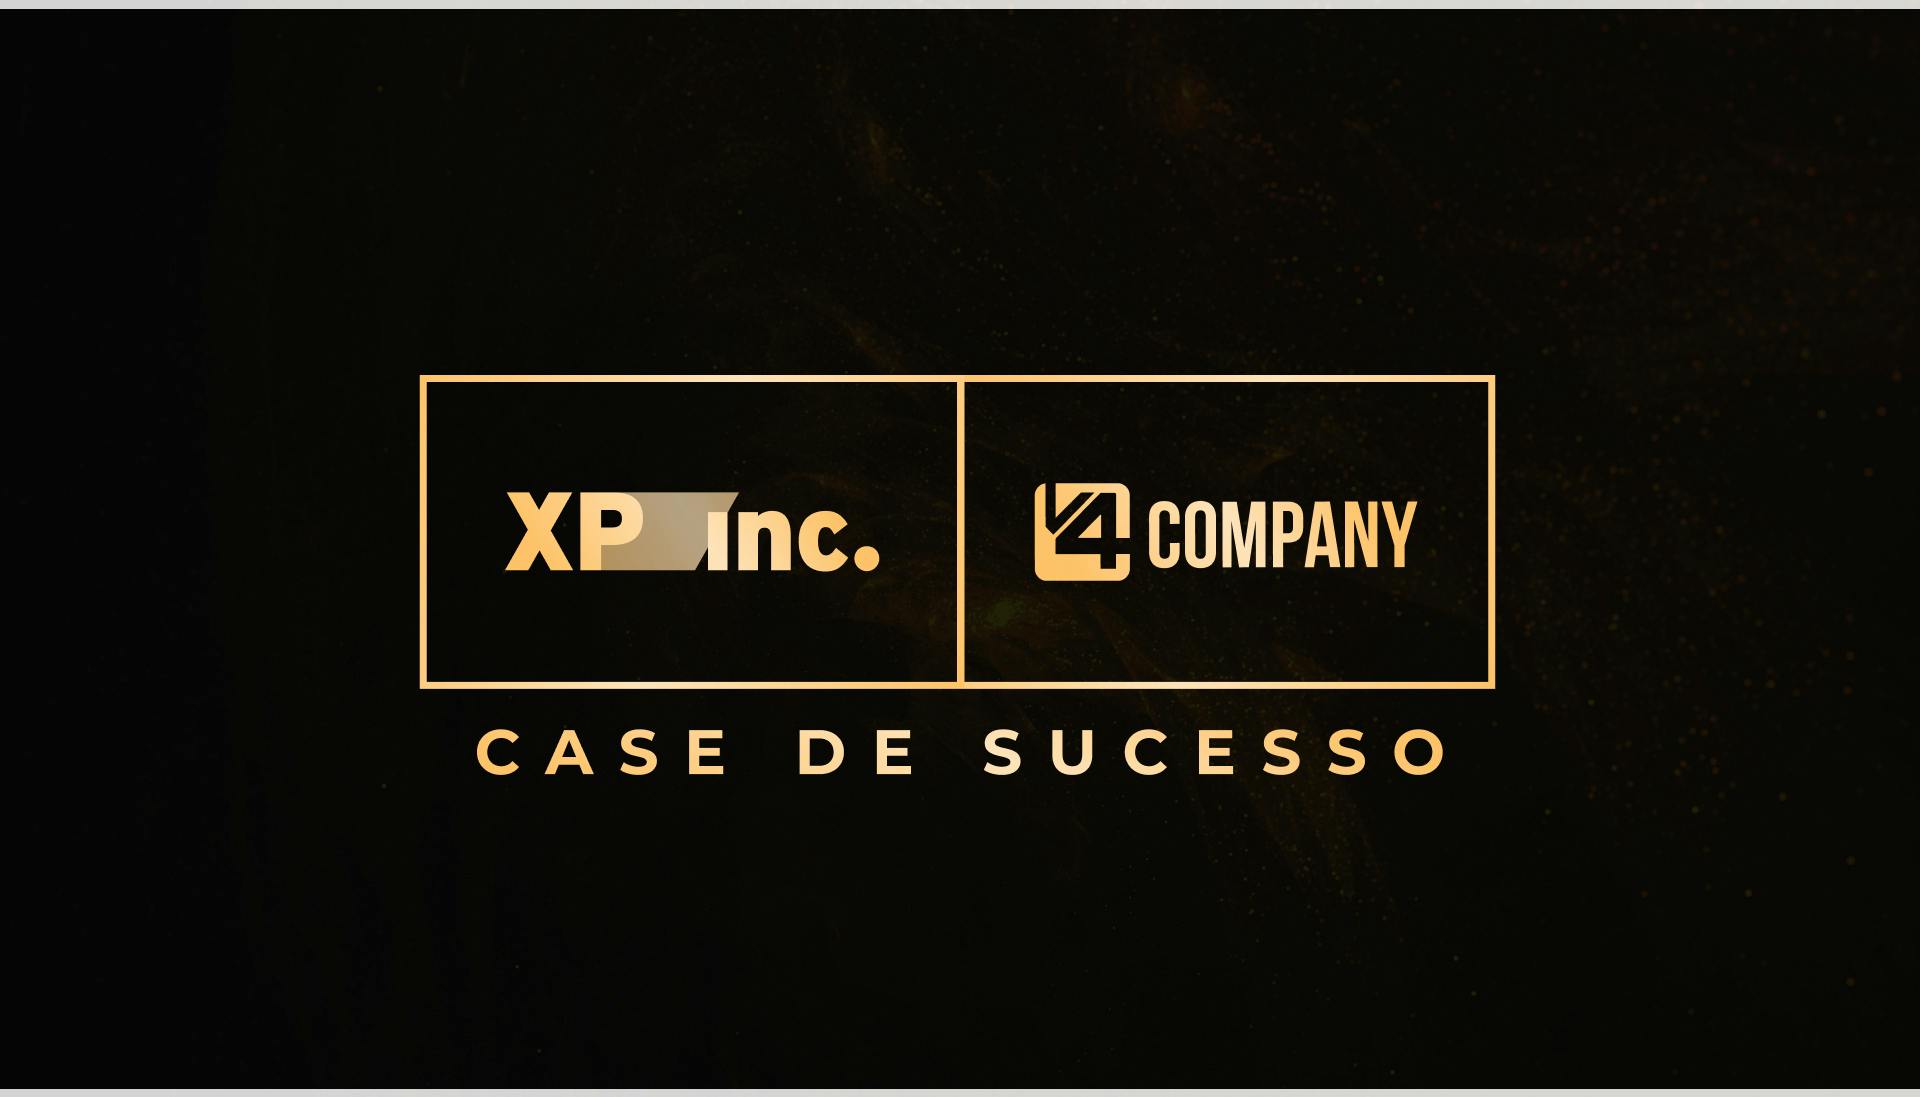 Estratégia de Marketing da XP Inc. com a V4 Company